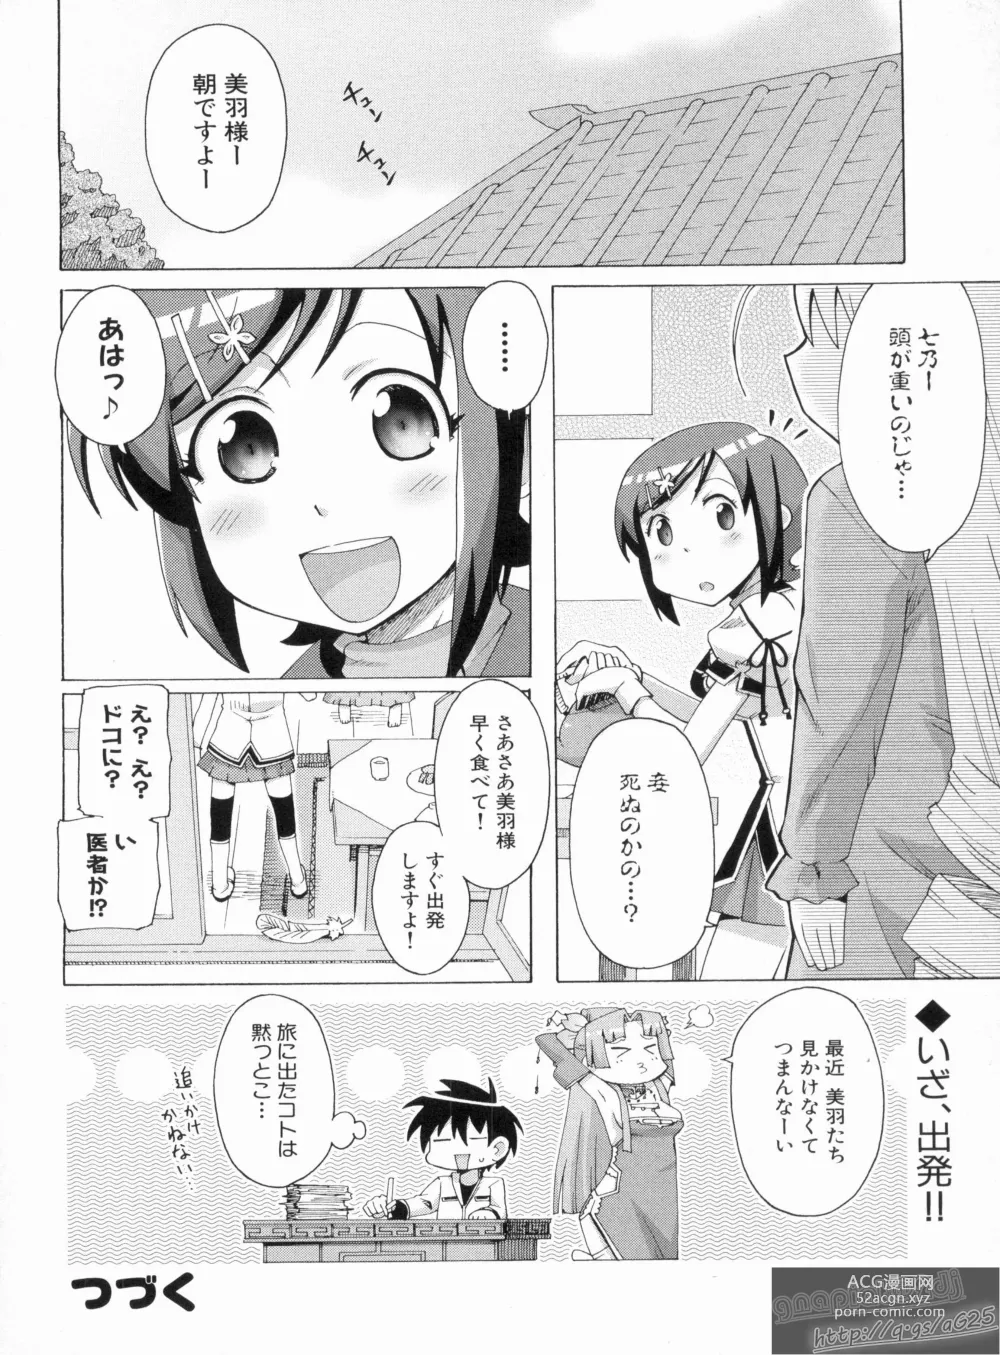 Page 134 of manga Shin Koihime Musou Gaishi Saiten VOL.1